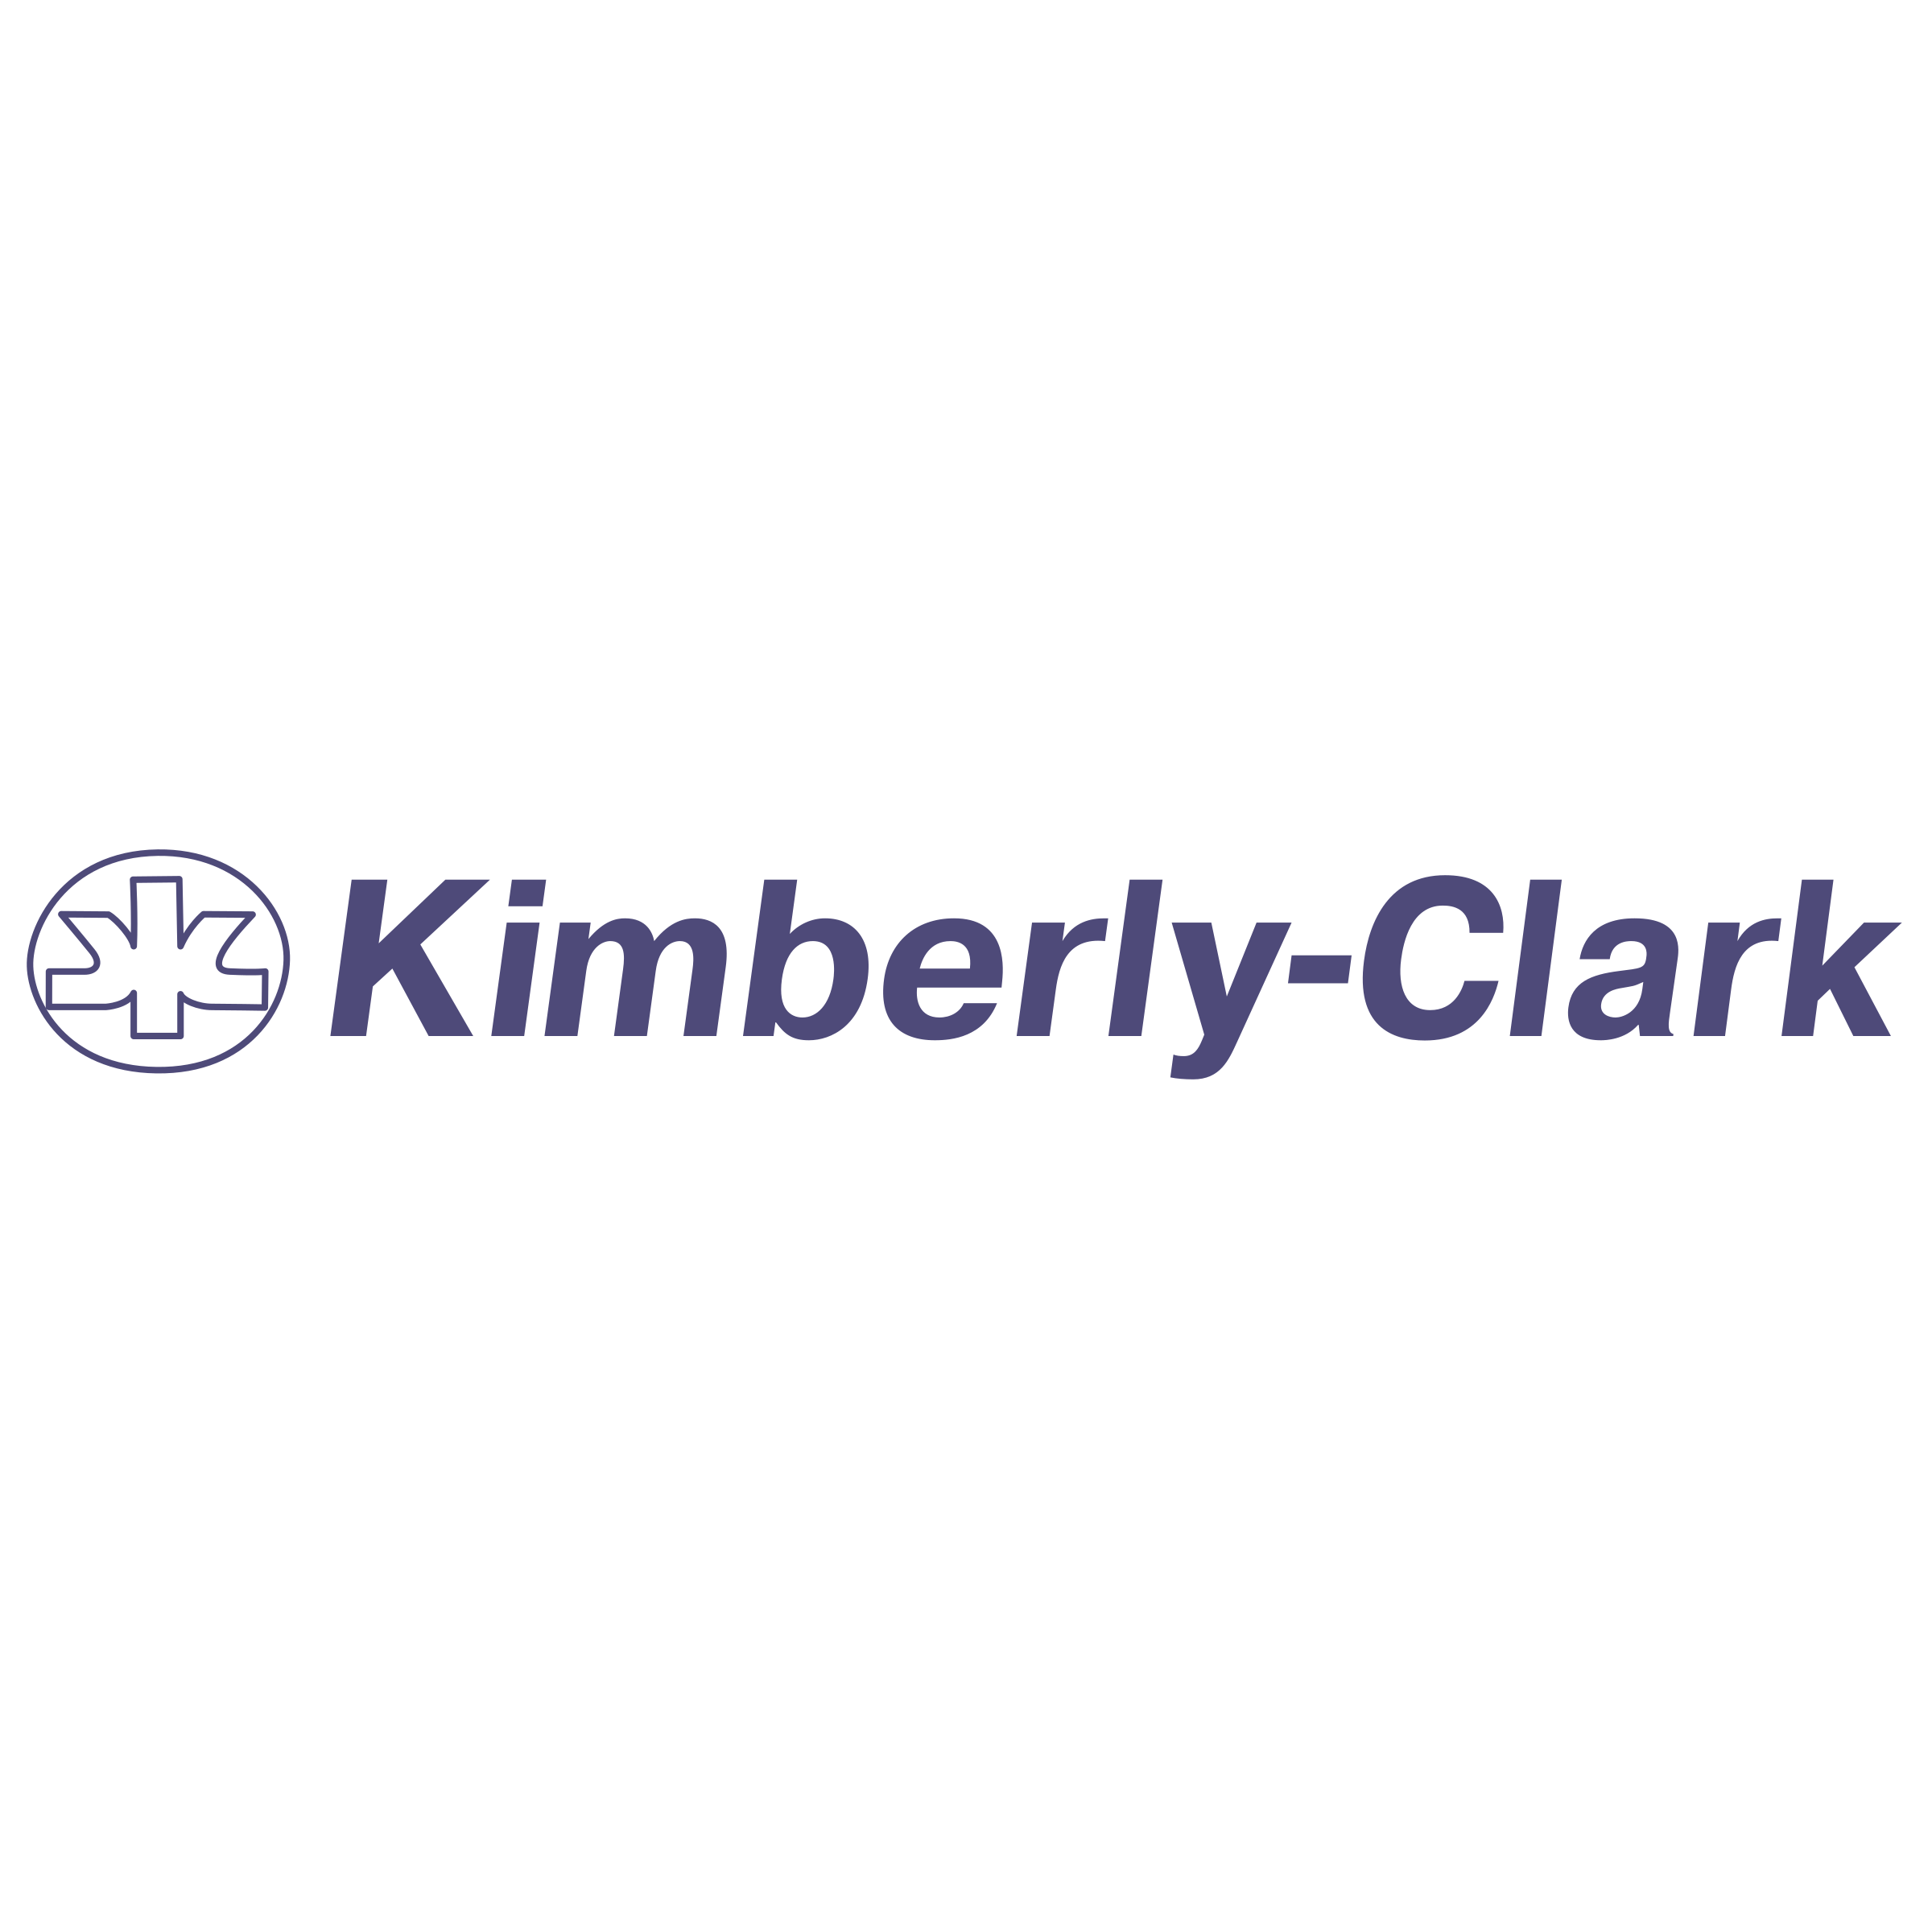 kimberly-clark-logo-png-transparent.png